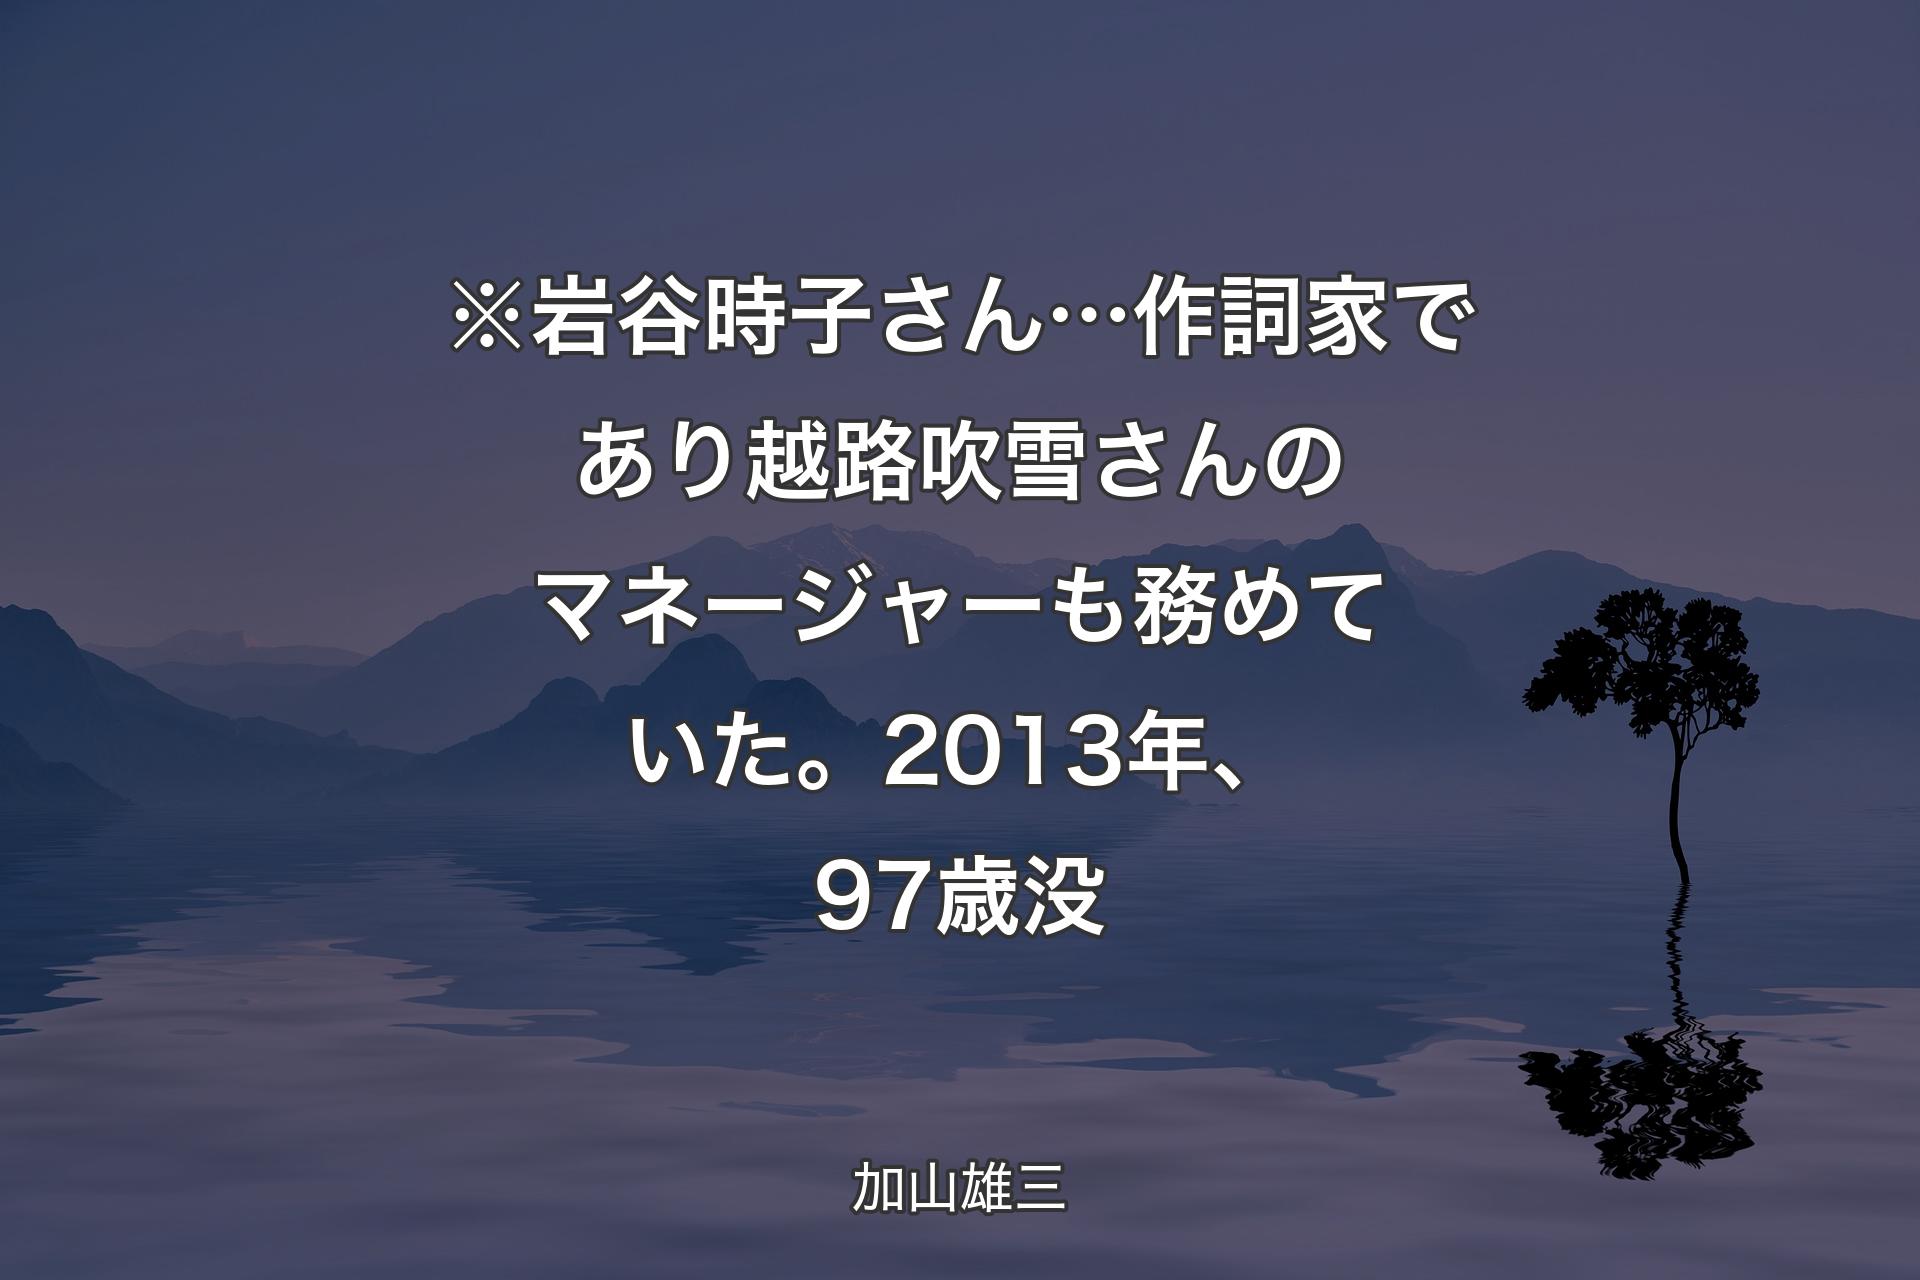 【背景4】※岩谷時子さん… 作詞家であり越路吹雪さんのマネージャーも務めていた。2013年、97歳没 - 加山雄三